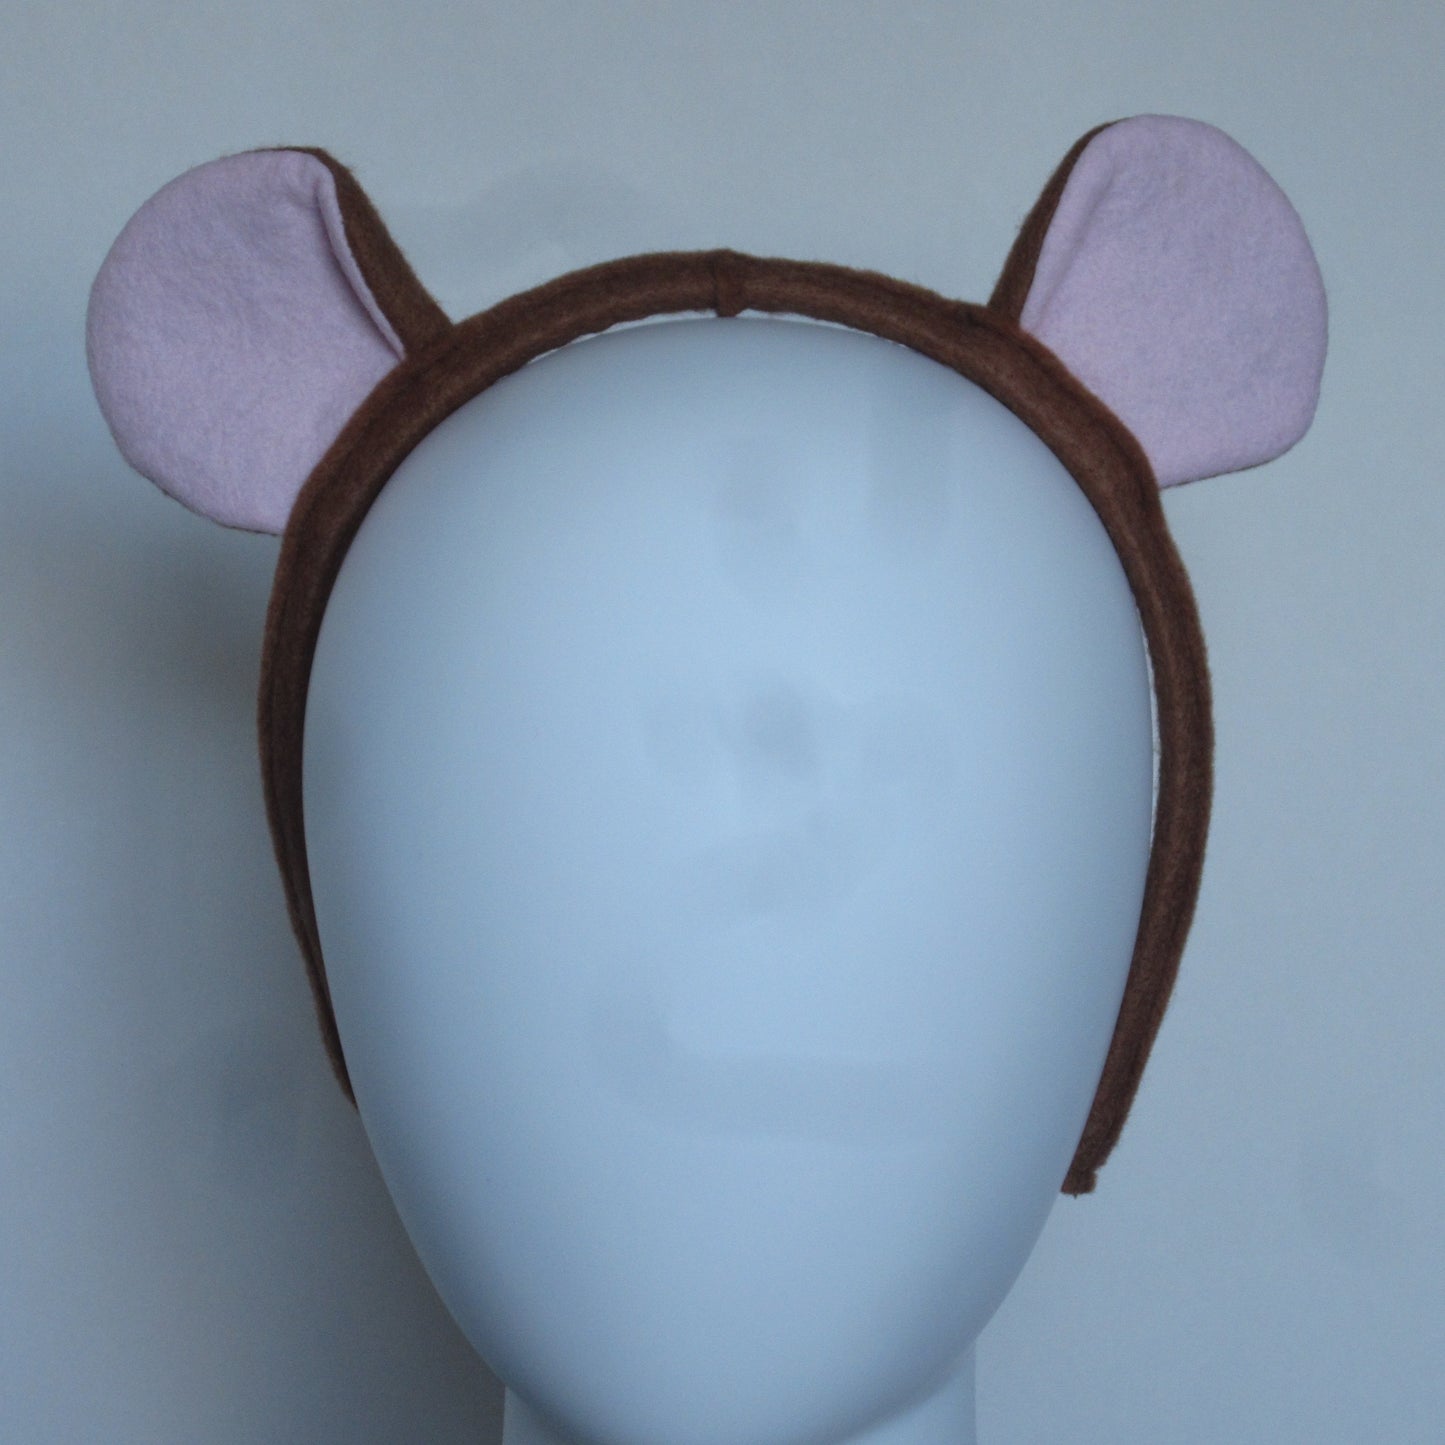 Mouse Ears Hairband Made of Cinnamon Coloured Felt